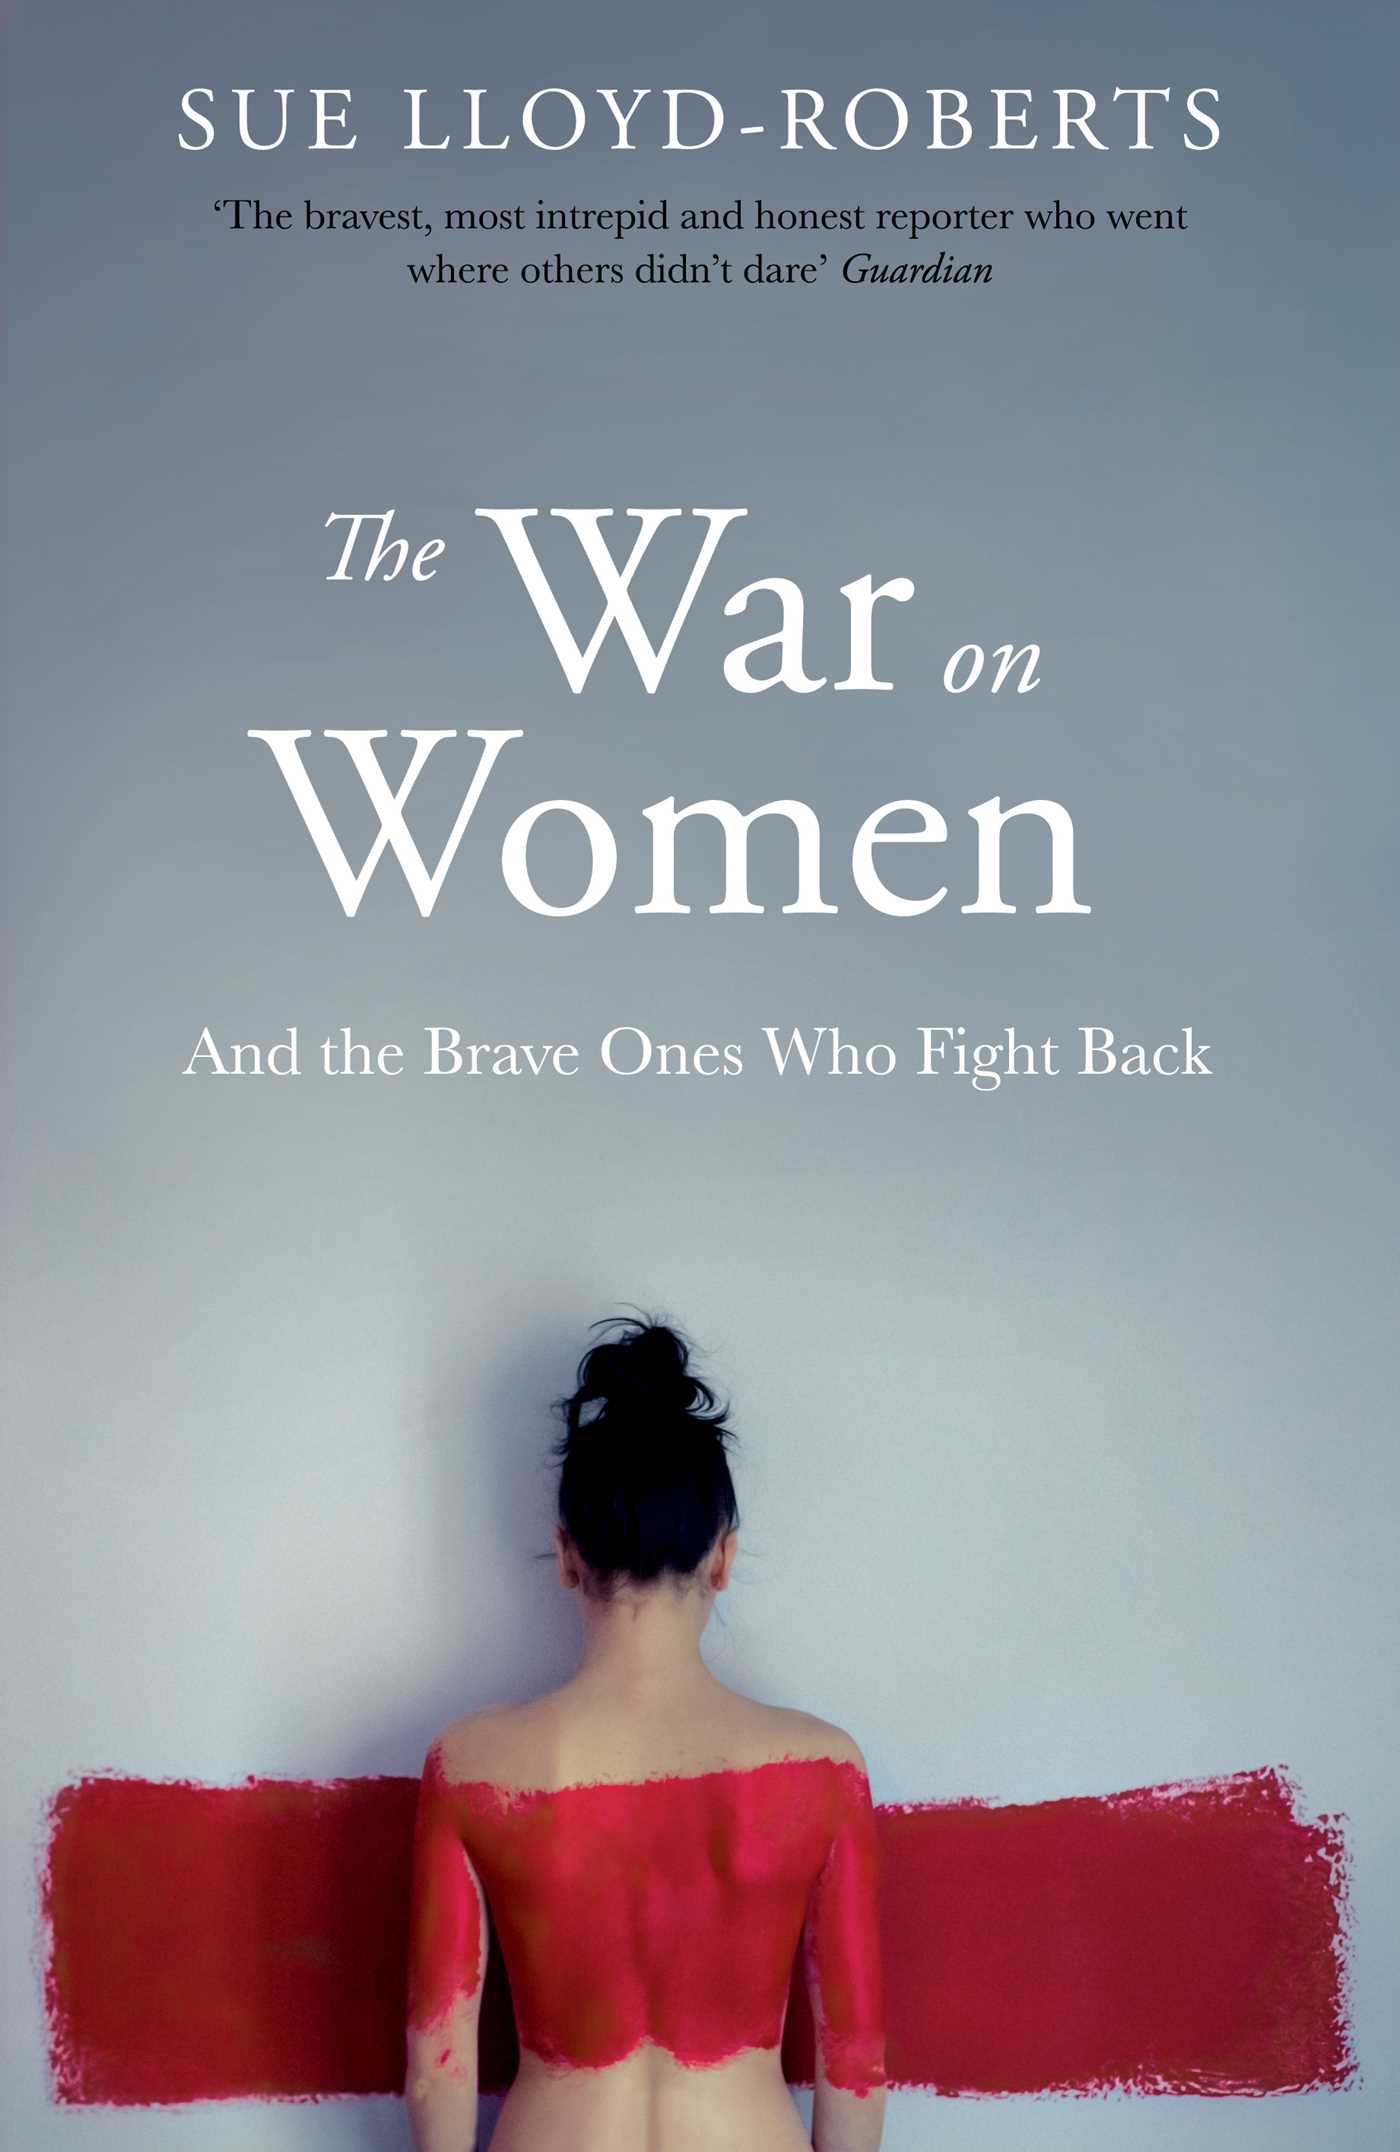 The war on women